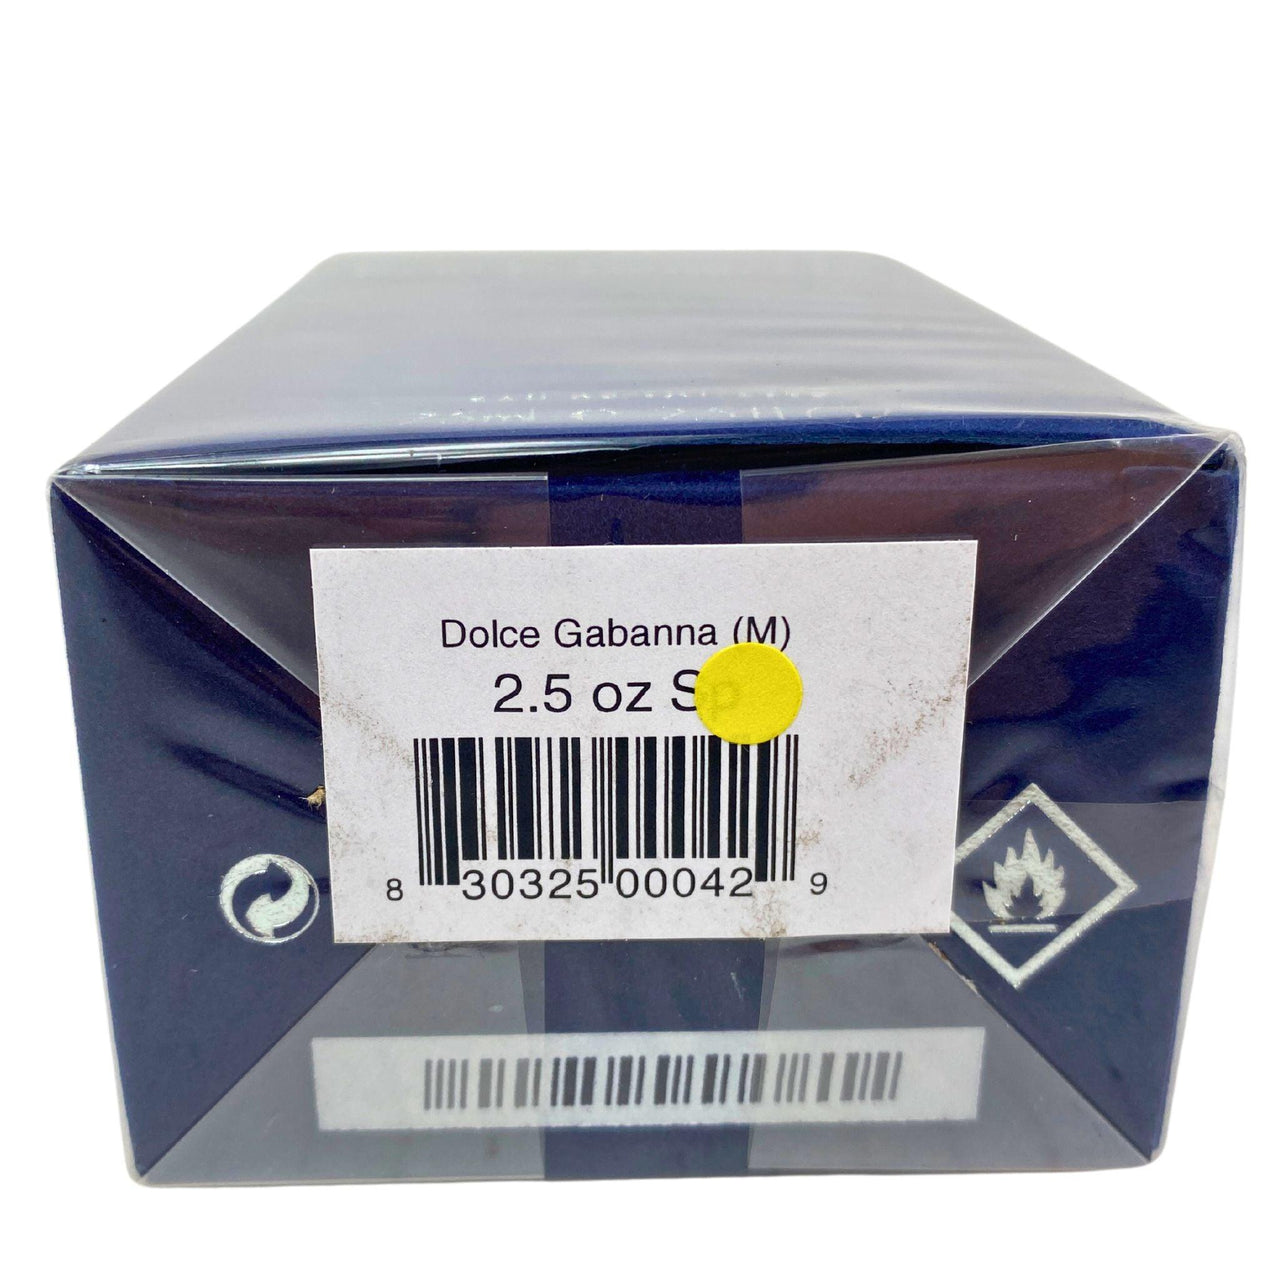 Dolce & Gabbana Pour Homme EAU DE TOILETTE 2.5OZ (35 Pcs Lot) - Discount Wholesalers Inc